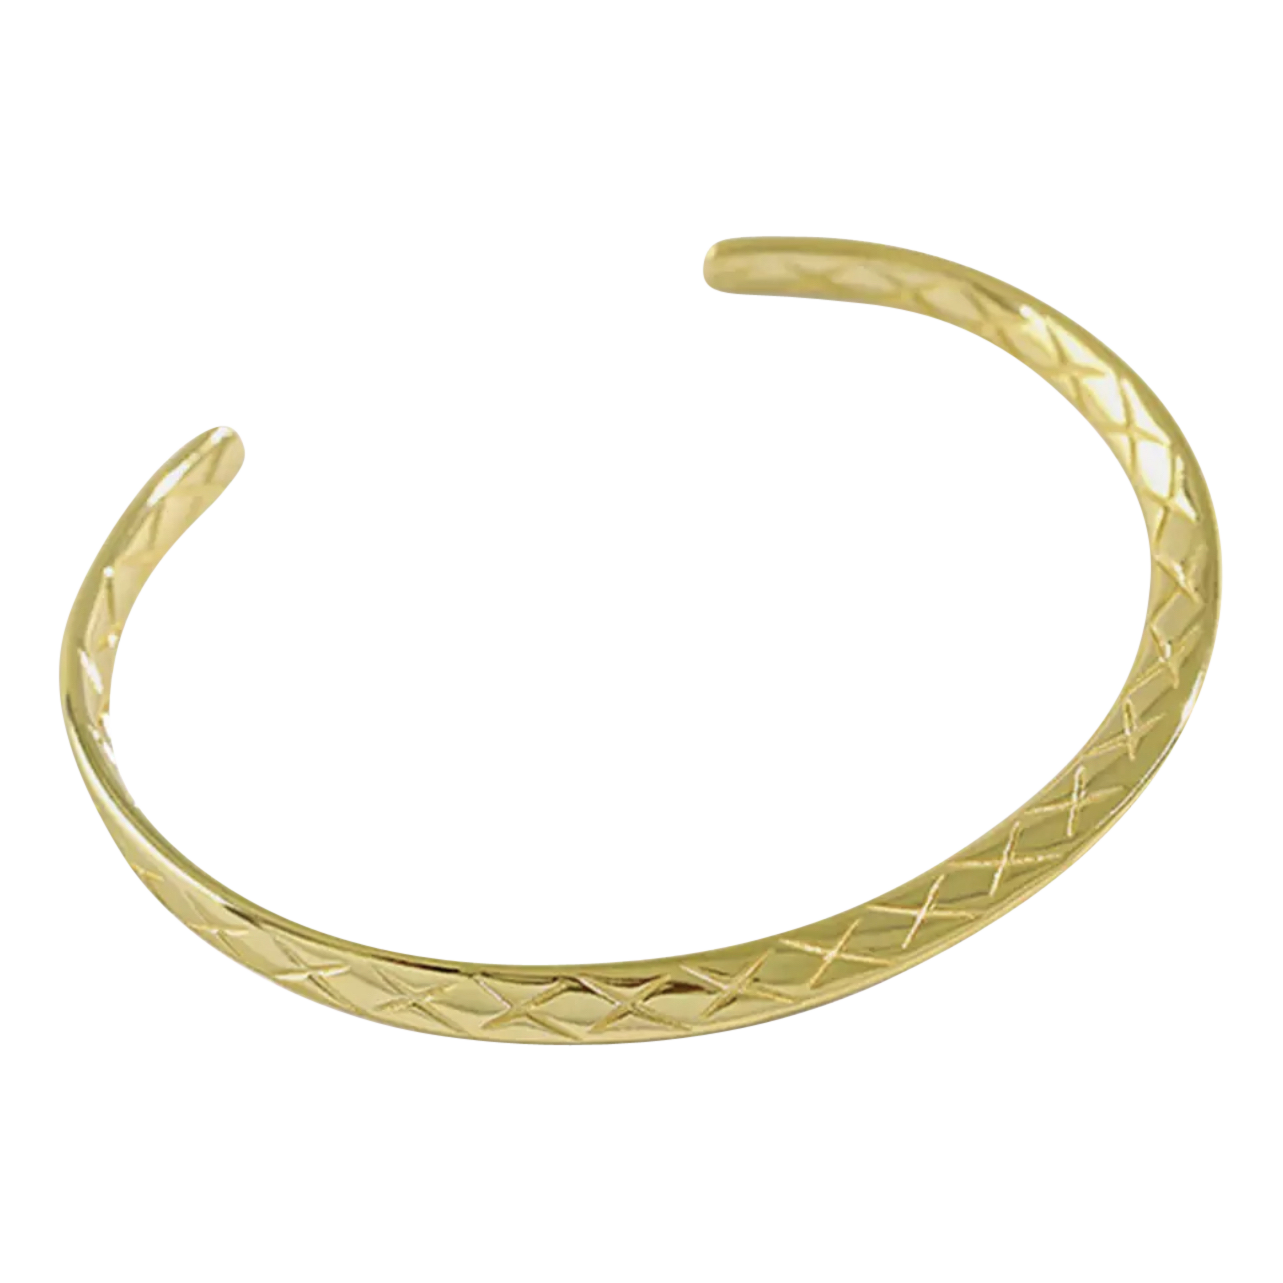 Product Afbeelding bovenaanzicht van onze mooie bangle armband met slangen patroon in 925 sterling zilver met 18 karaat gouden laag